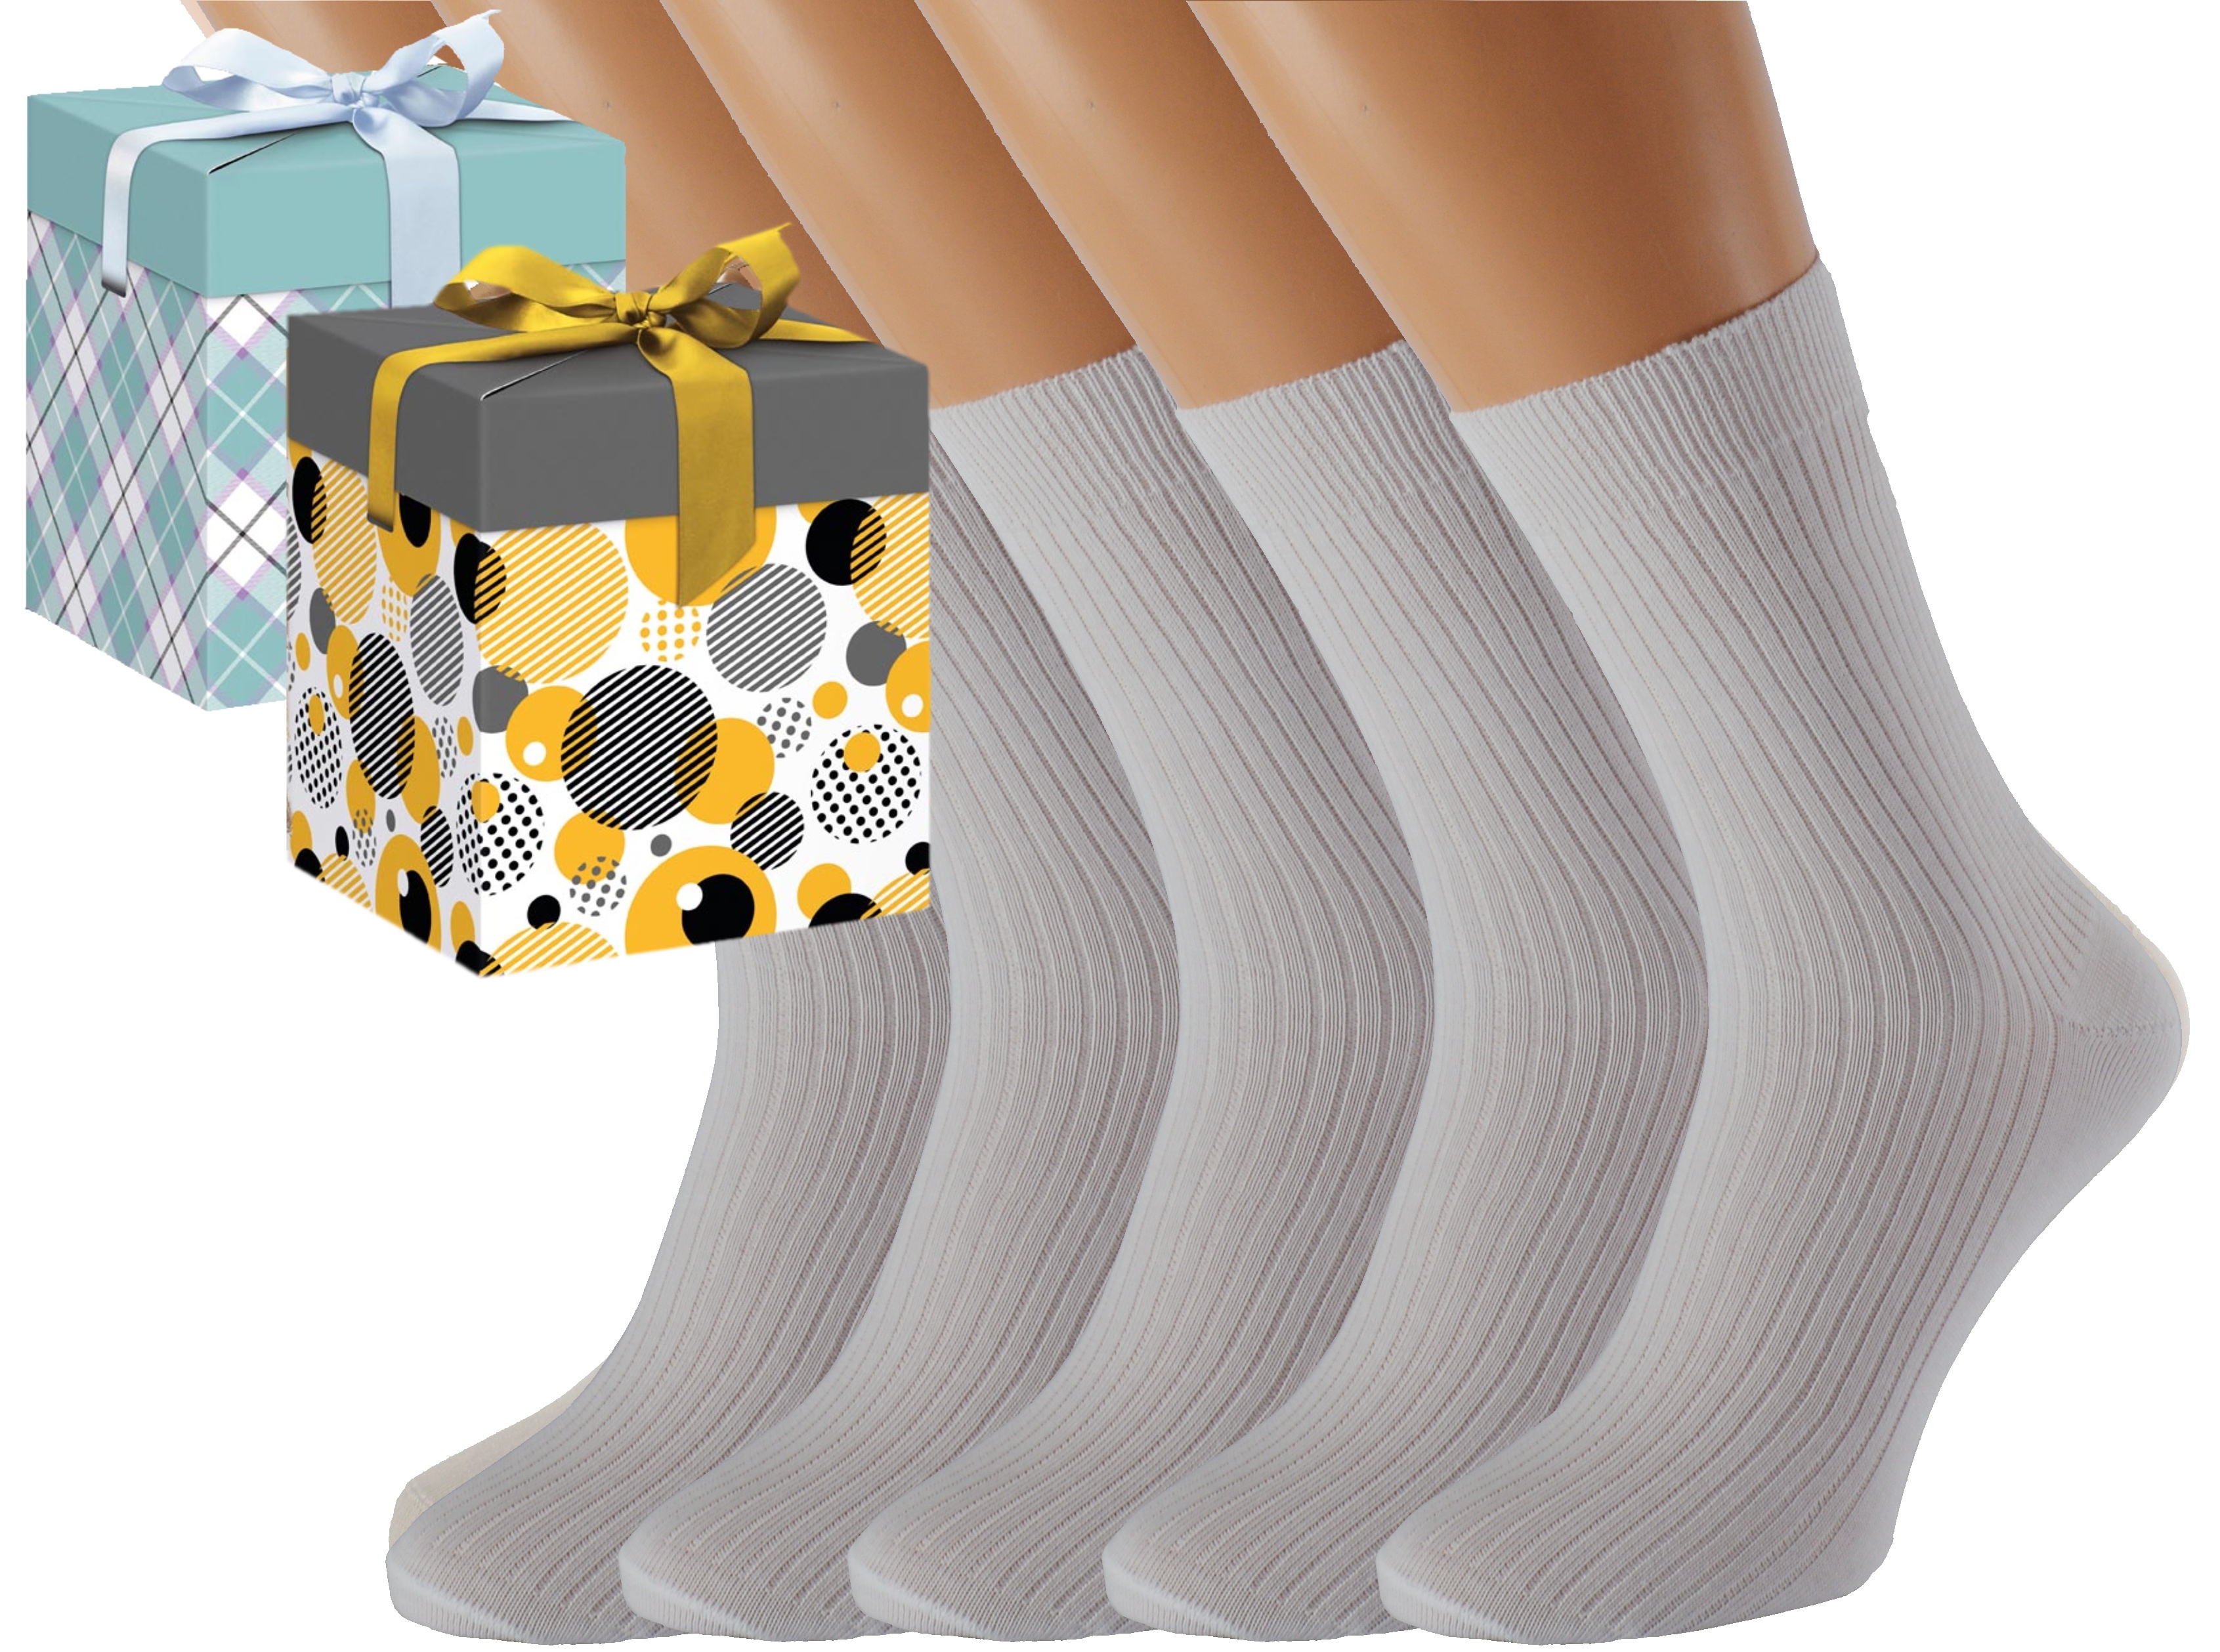 Dárkové balení 5 párů zdravotních ponožek LUKÁŠ Barva: Bílé, Velikost: EUR 36-38 (UK 4-5), Zvolte variantu dárkového balení: Mint kostkovaná